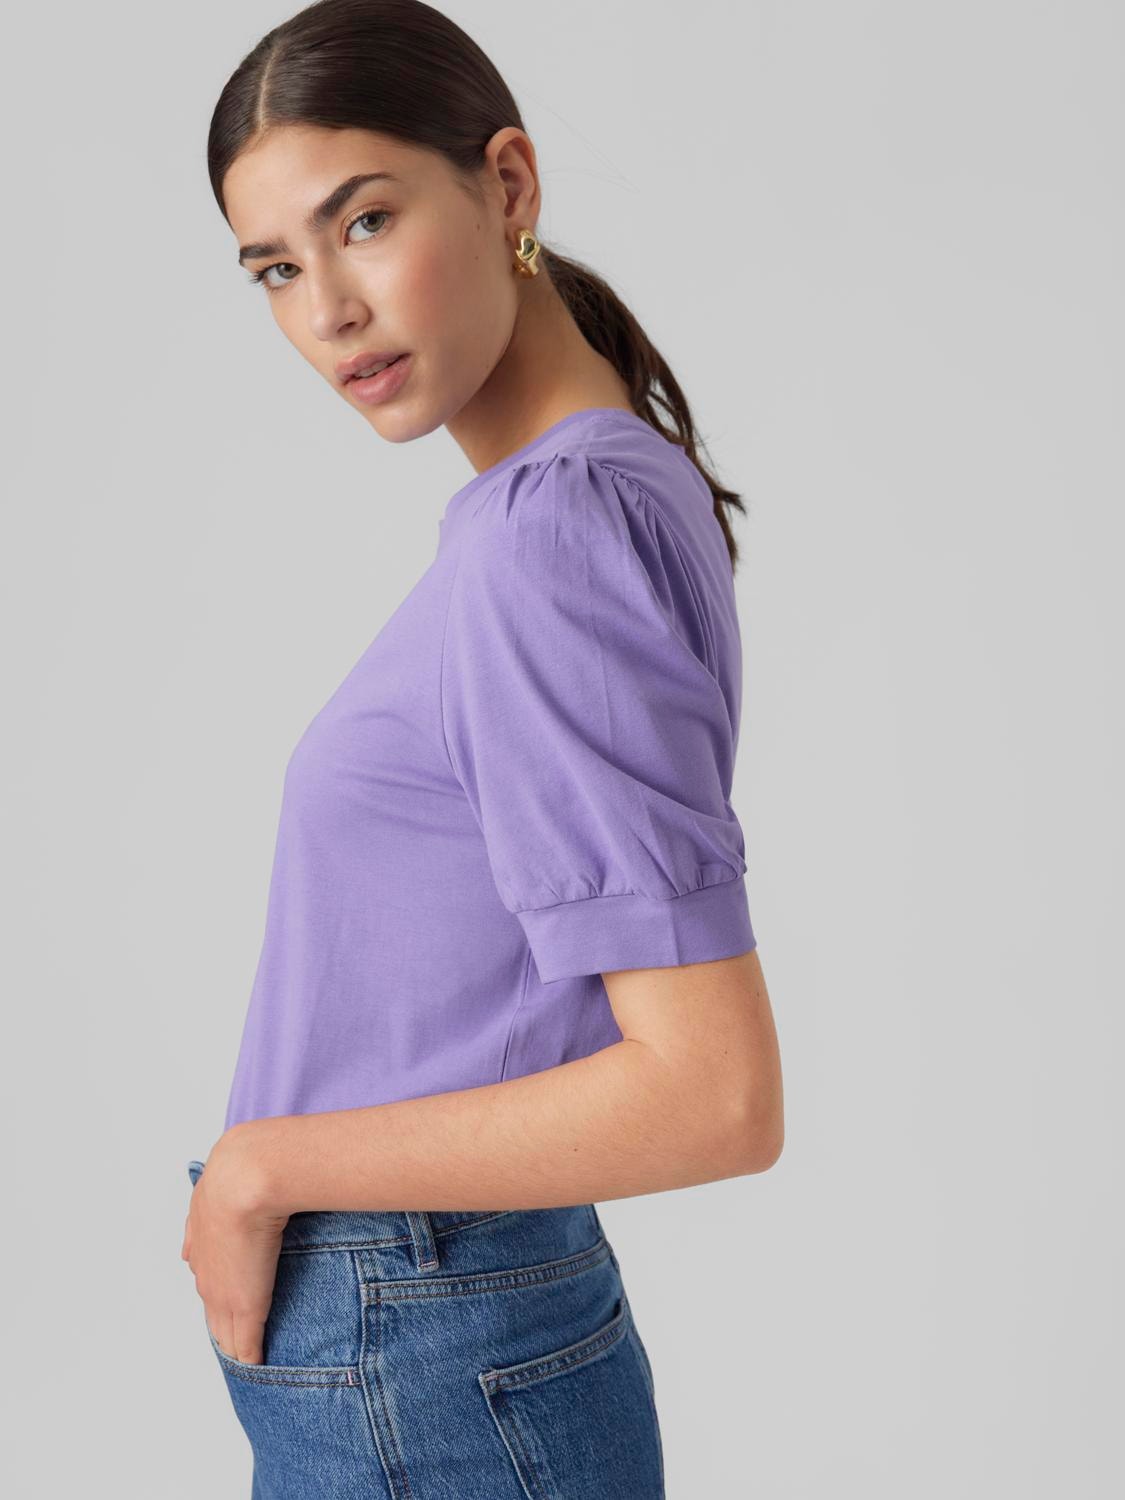 Vero Moda VMKERRY T-Shirt -Paisley Purple - 10275520